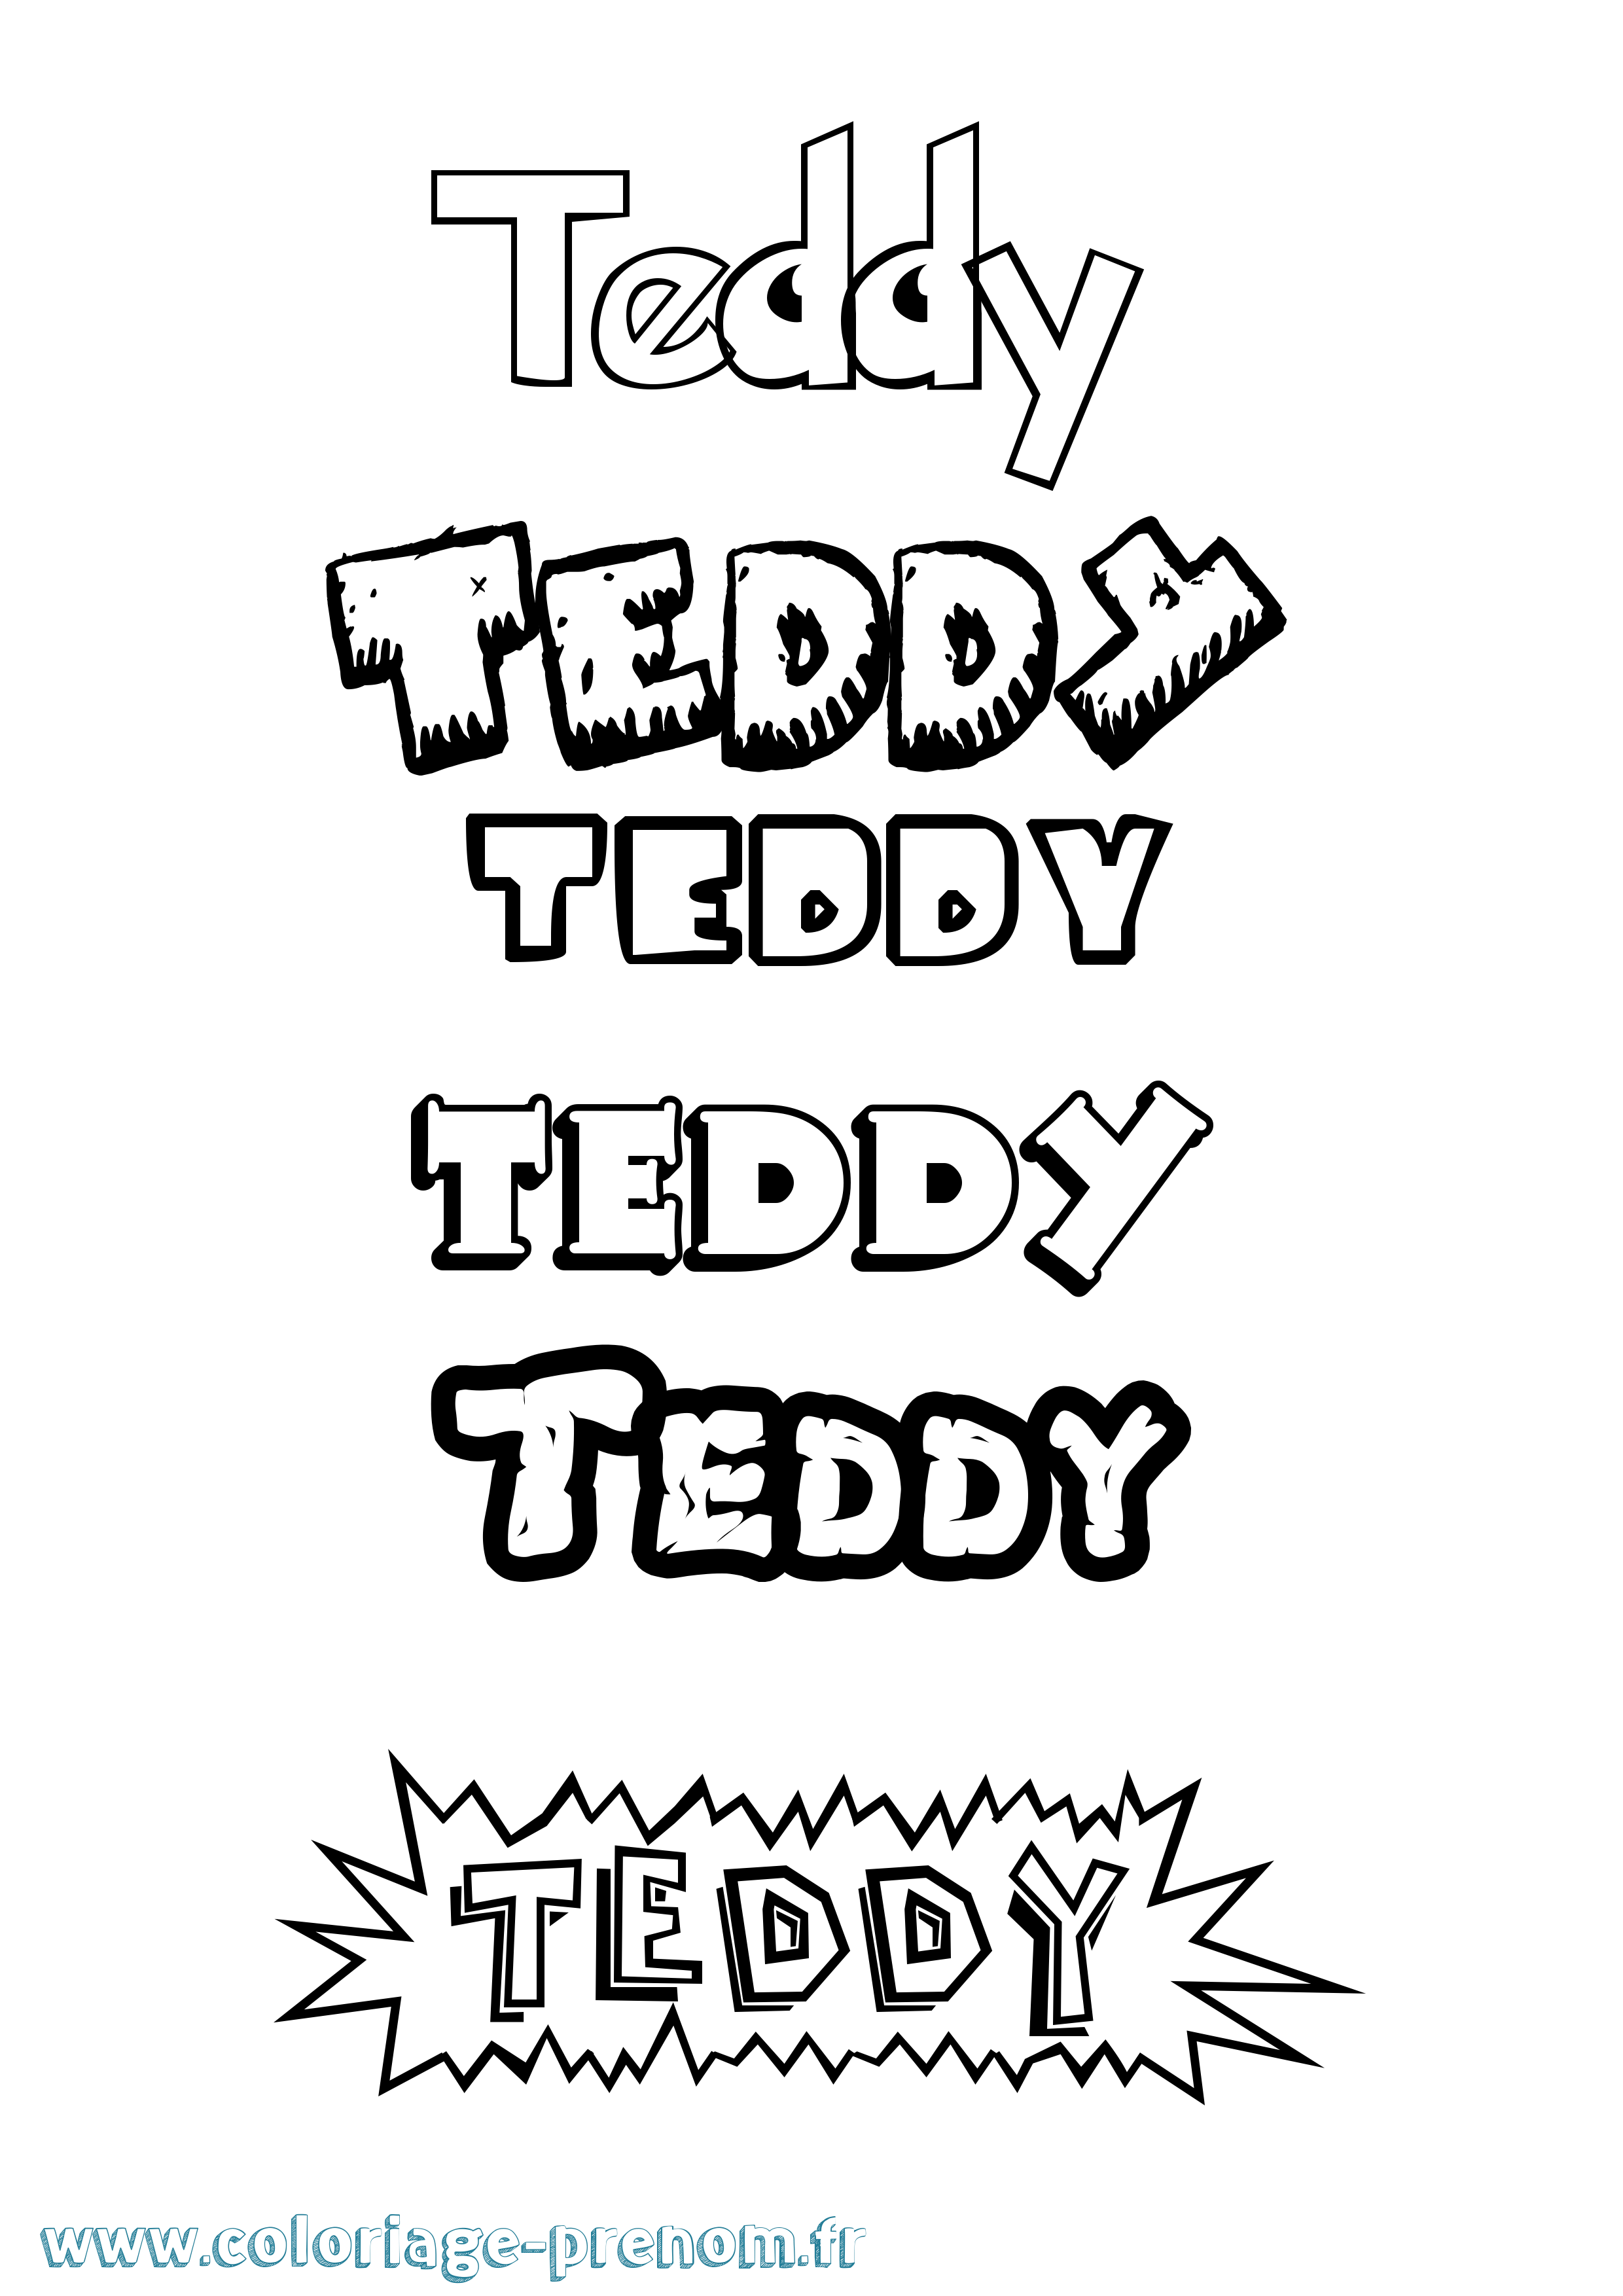 Coloriage prénom Teddy